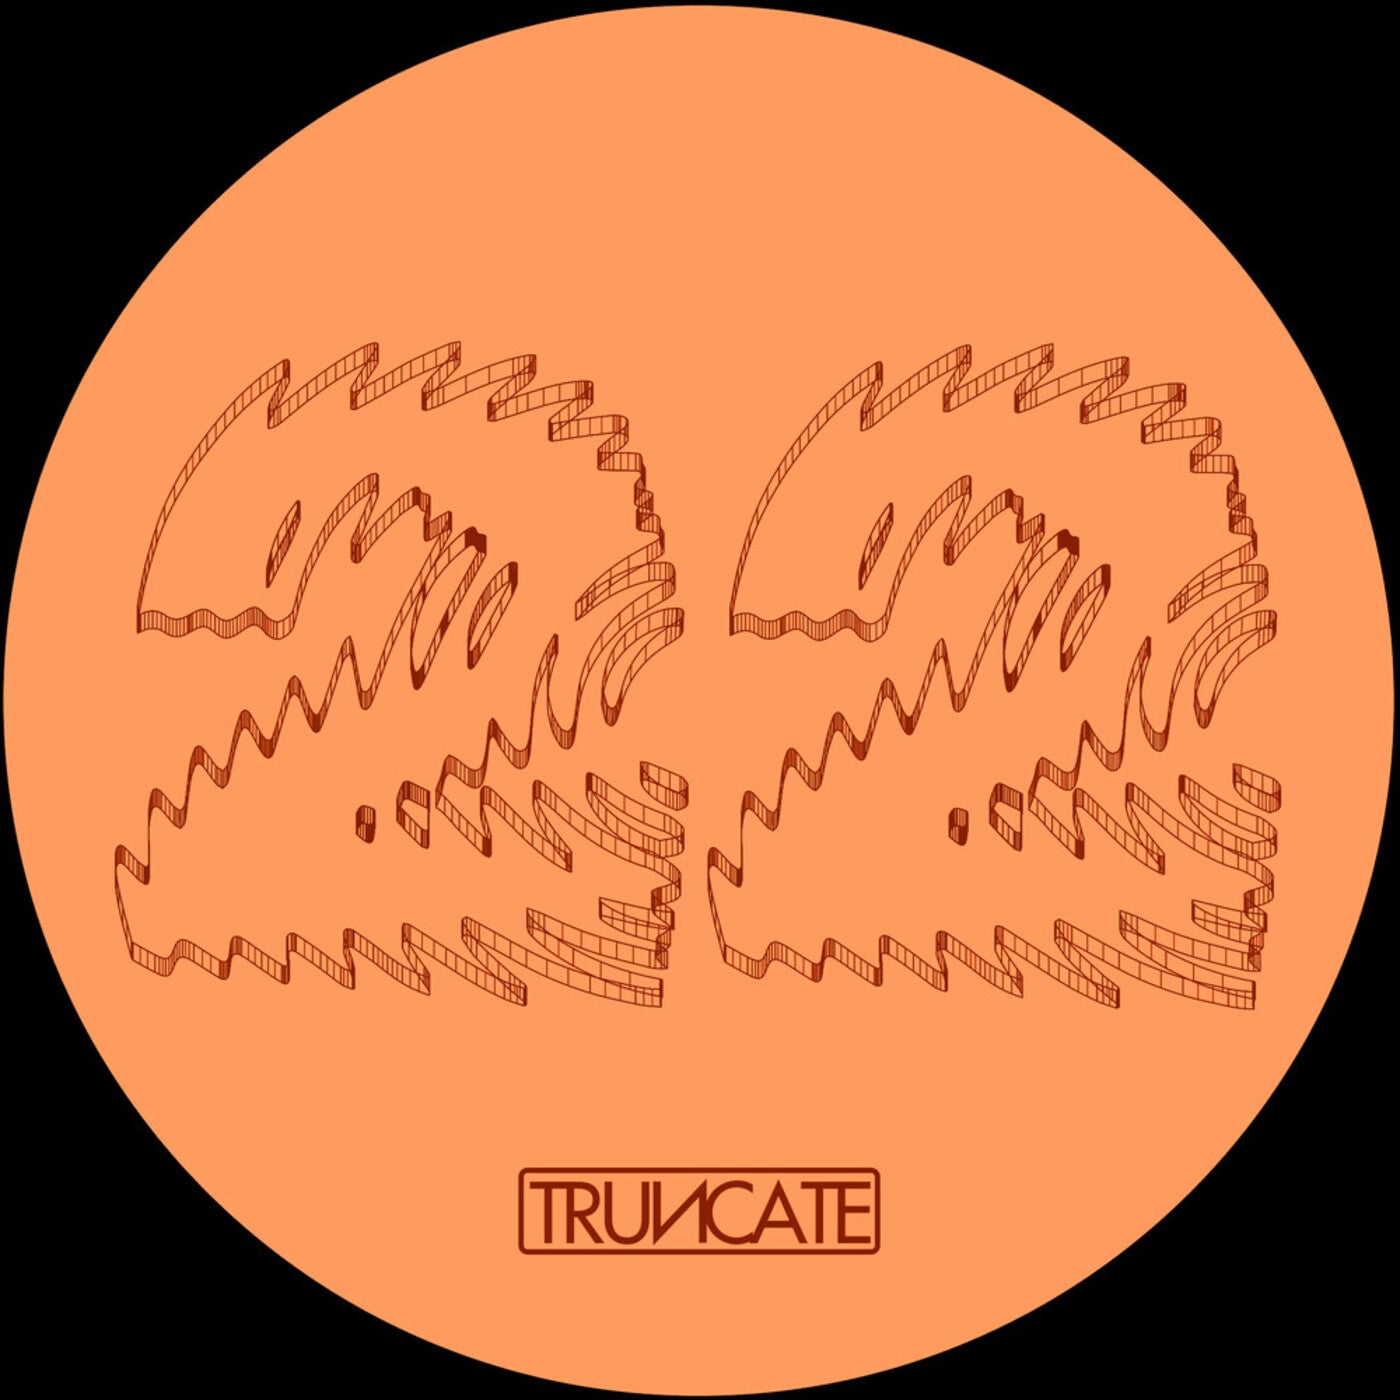 Truncate – First Phase [TRUNCATE22]